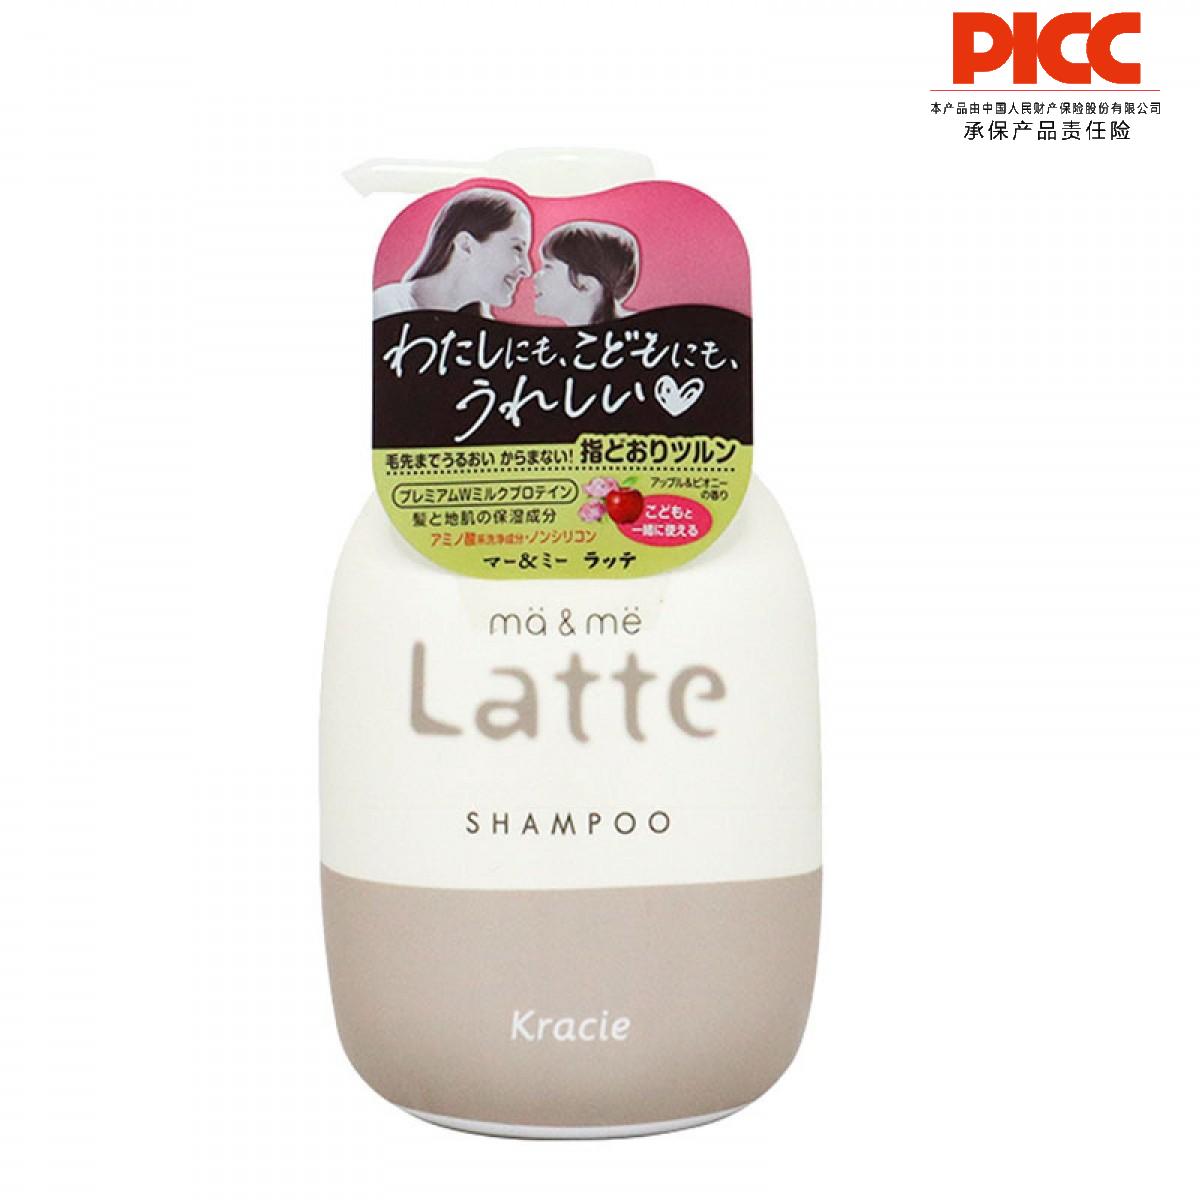 【保稅】日本肌美精Kracie葵緹亞 牛奶蛋白洗發水 490g